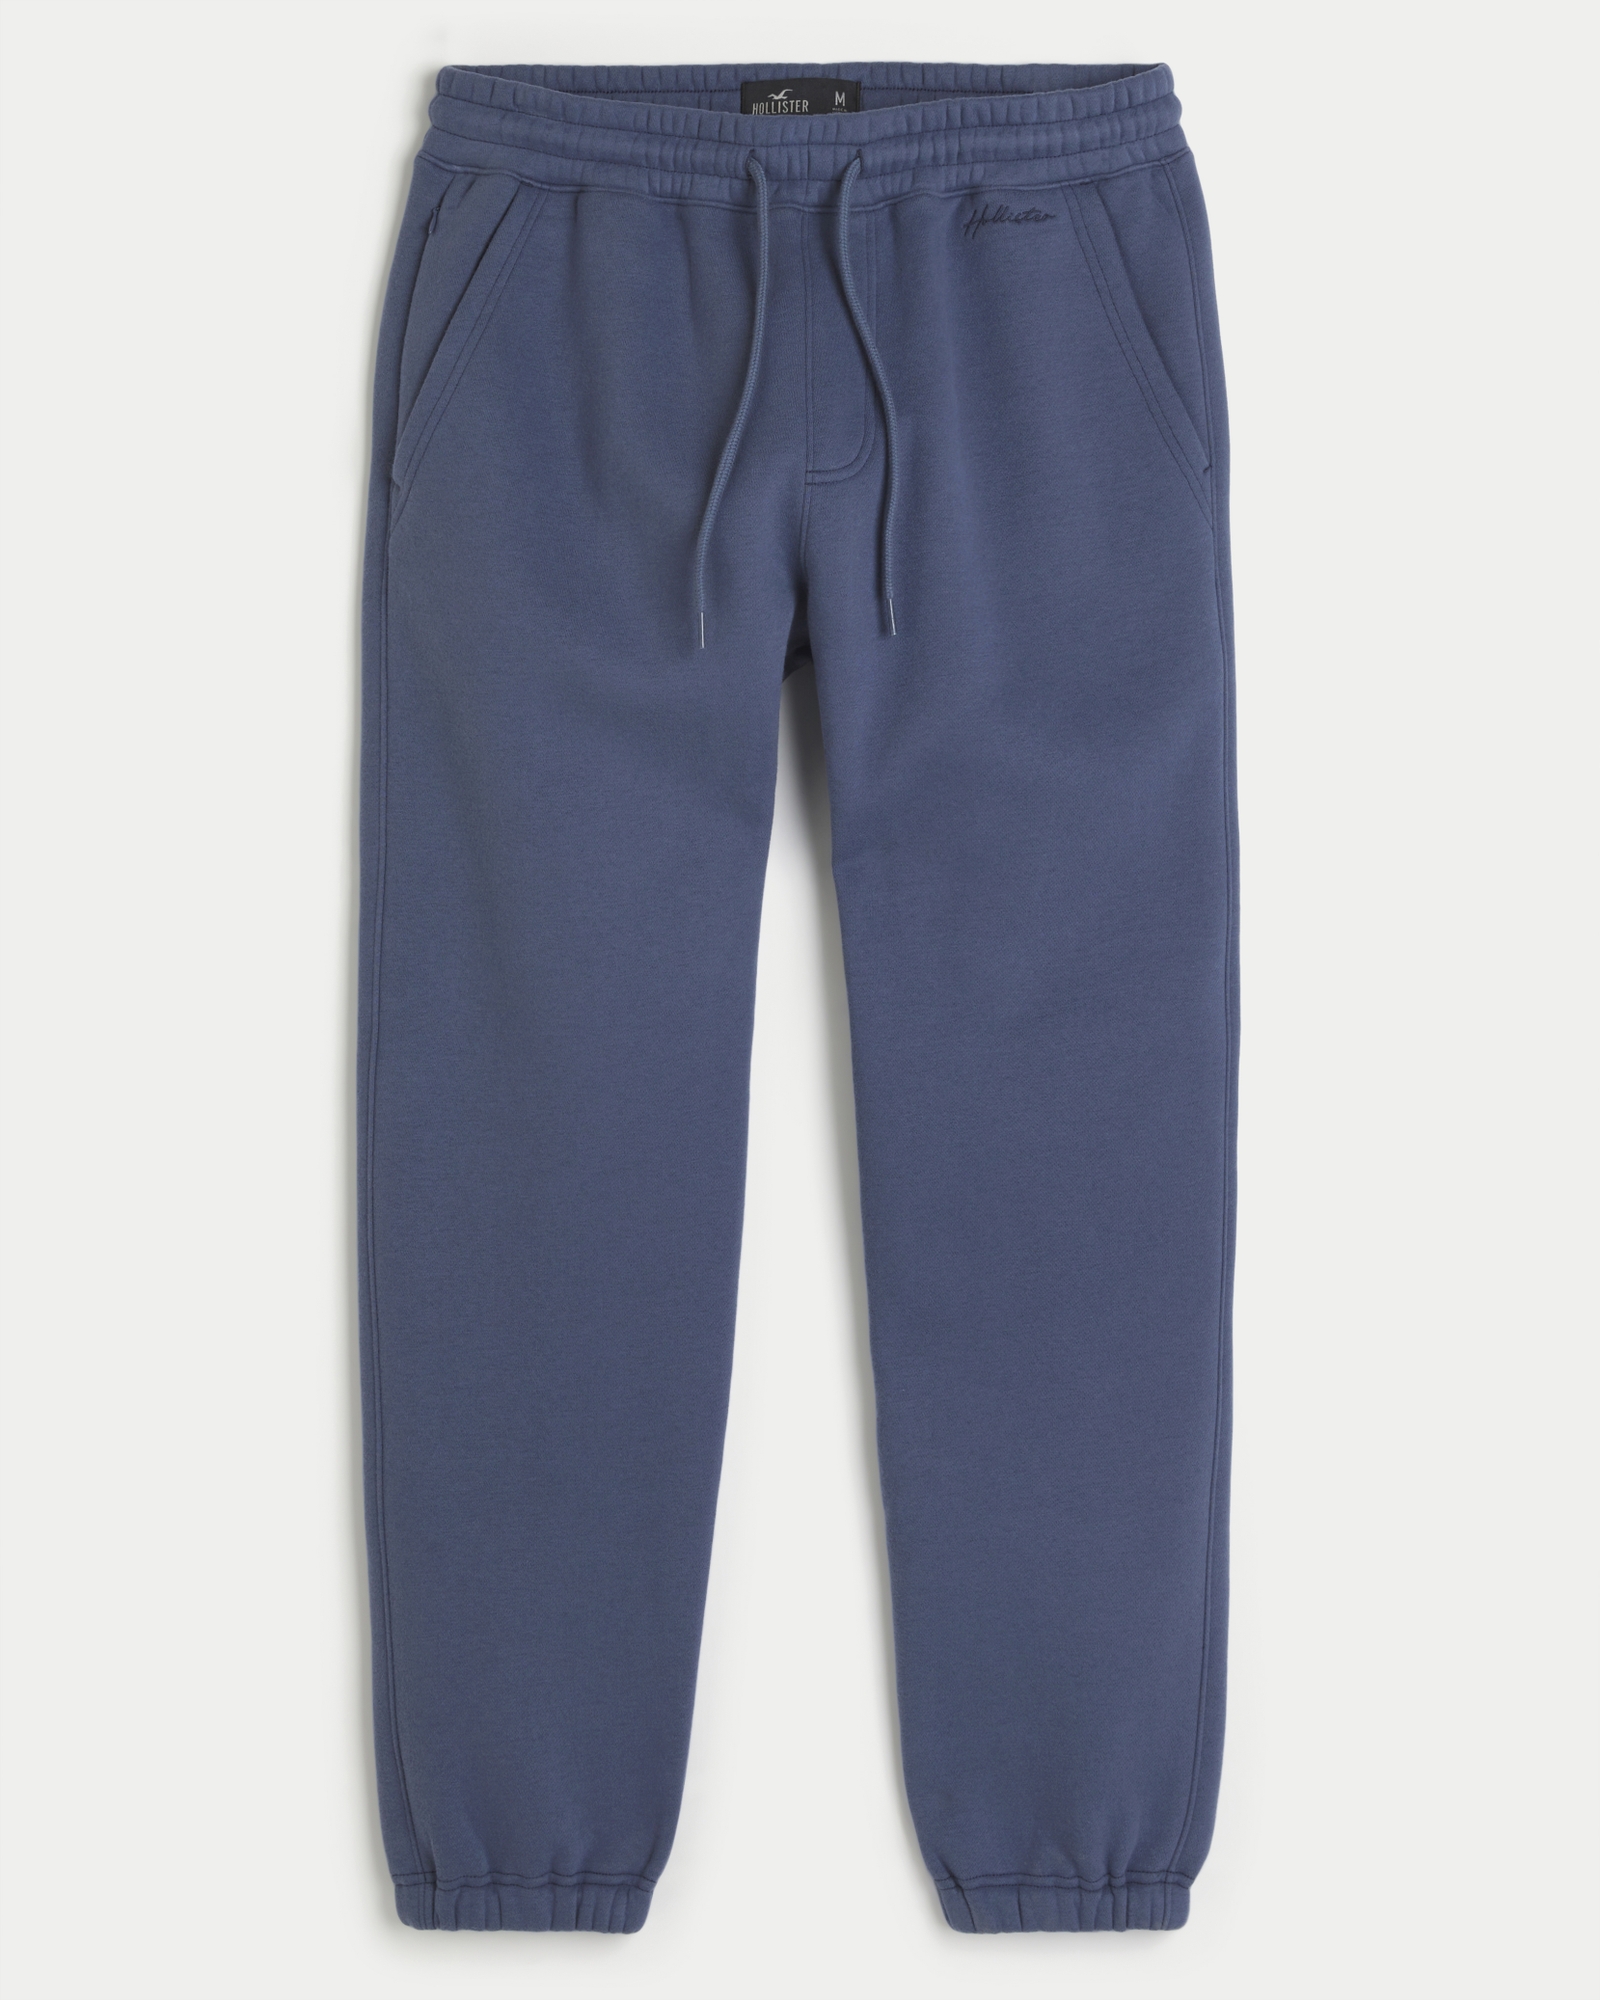 Hollister, Pants & Jumpsuits, Hollister Navy Blue Sweatpants